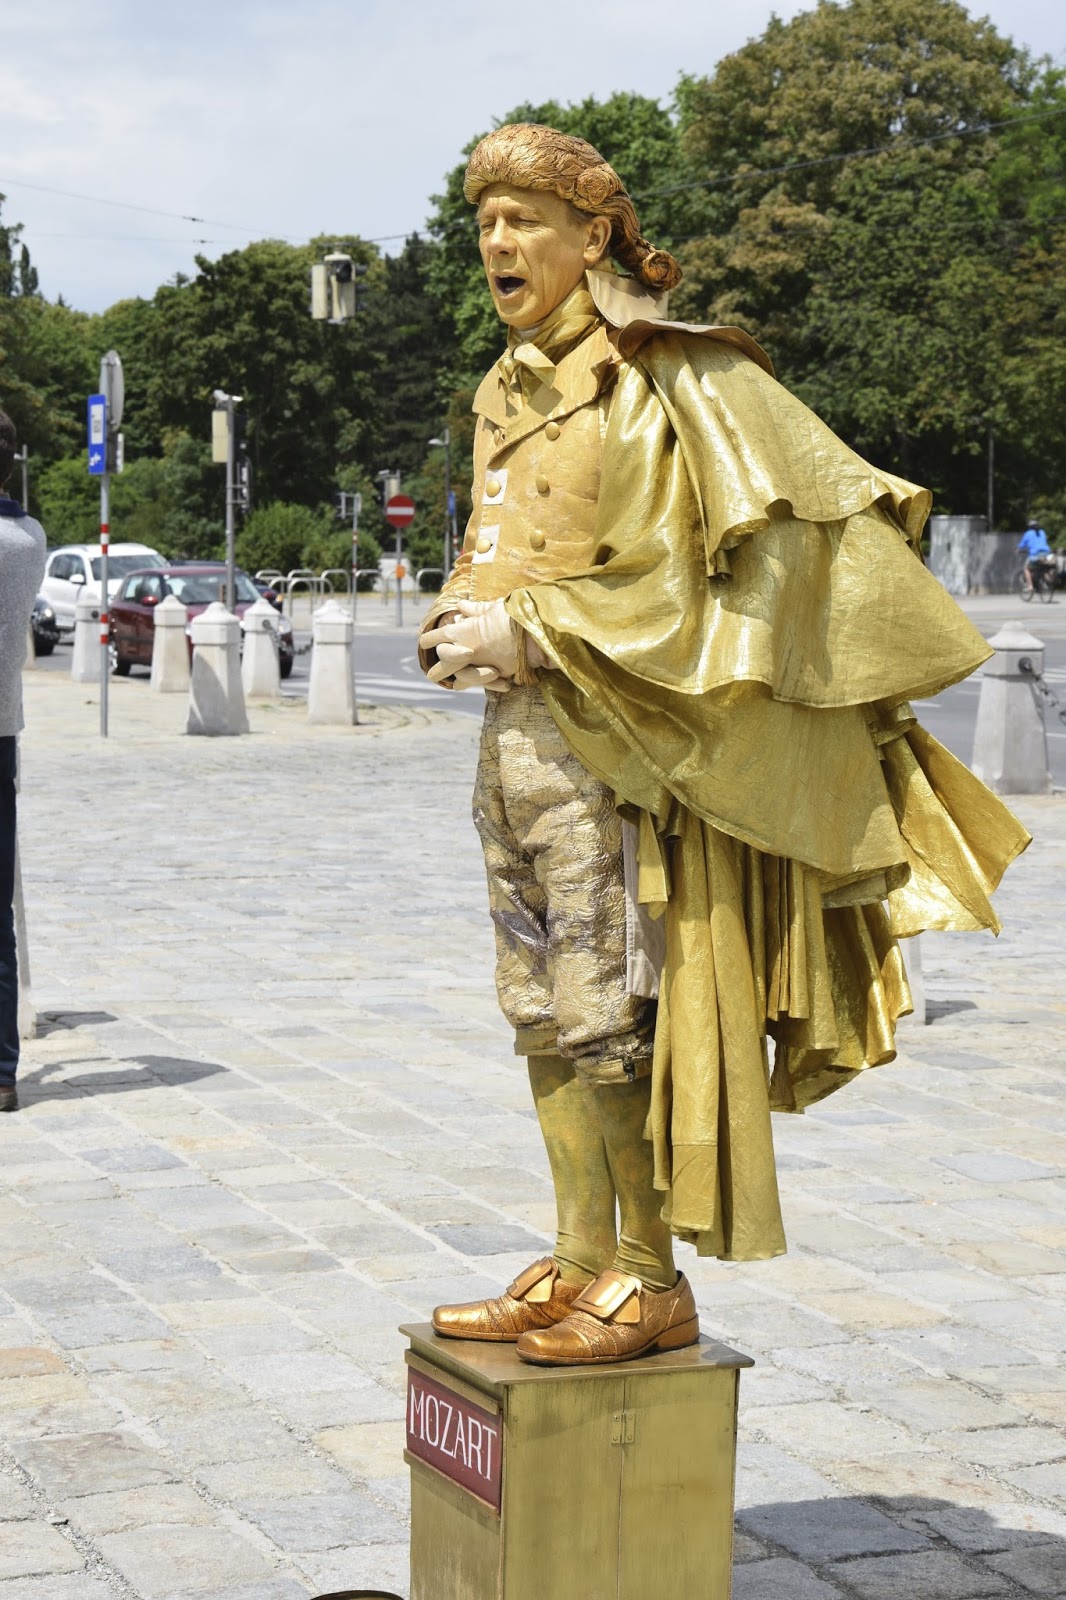 Living statue of Mozart, Vienna, Austria